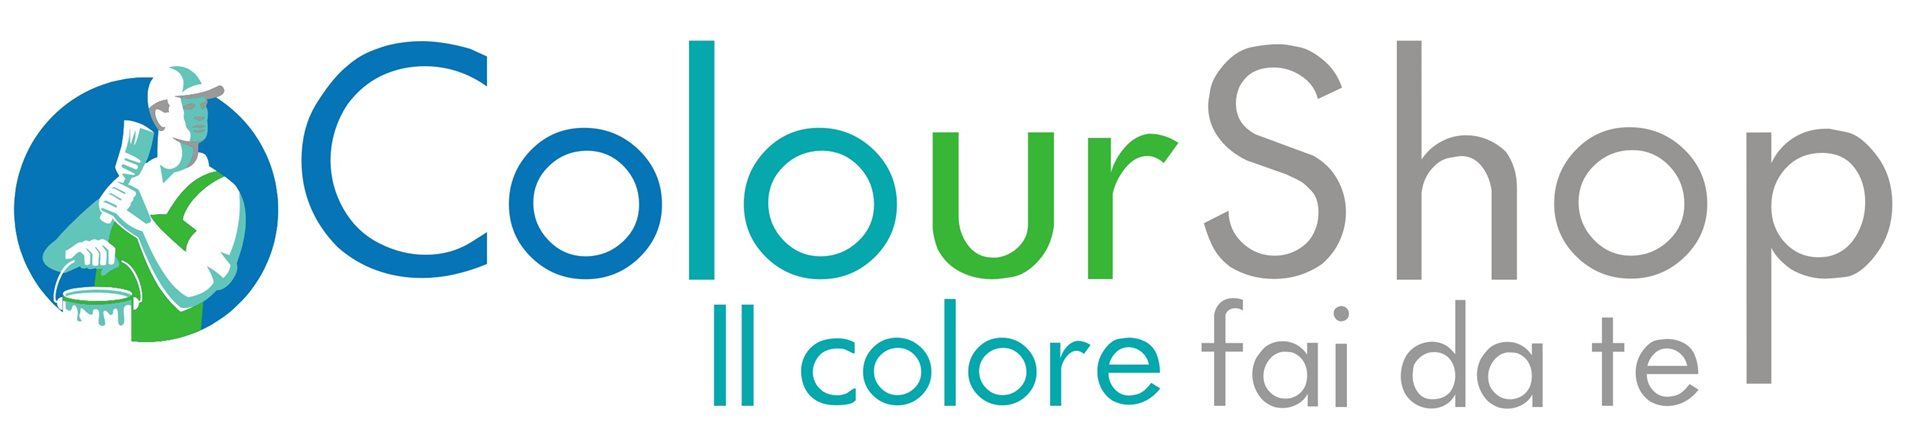 ColourShop.it